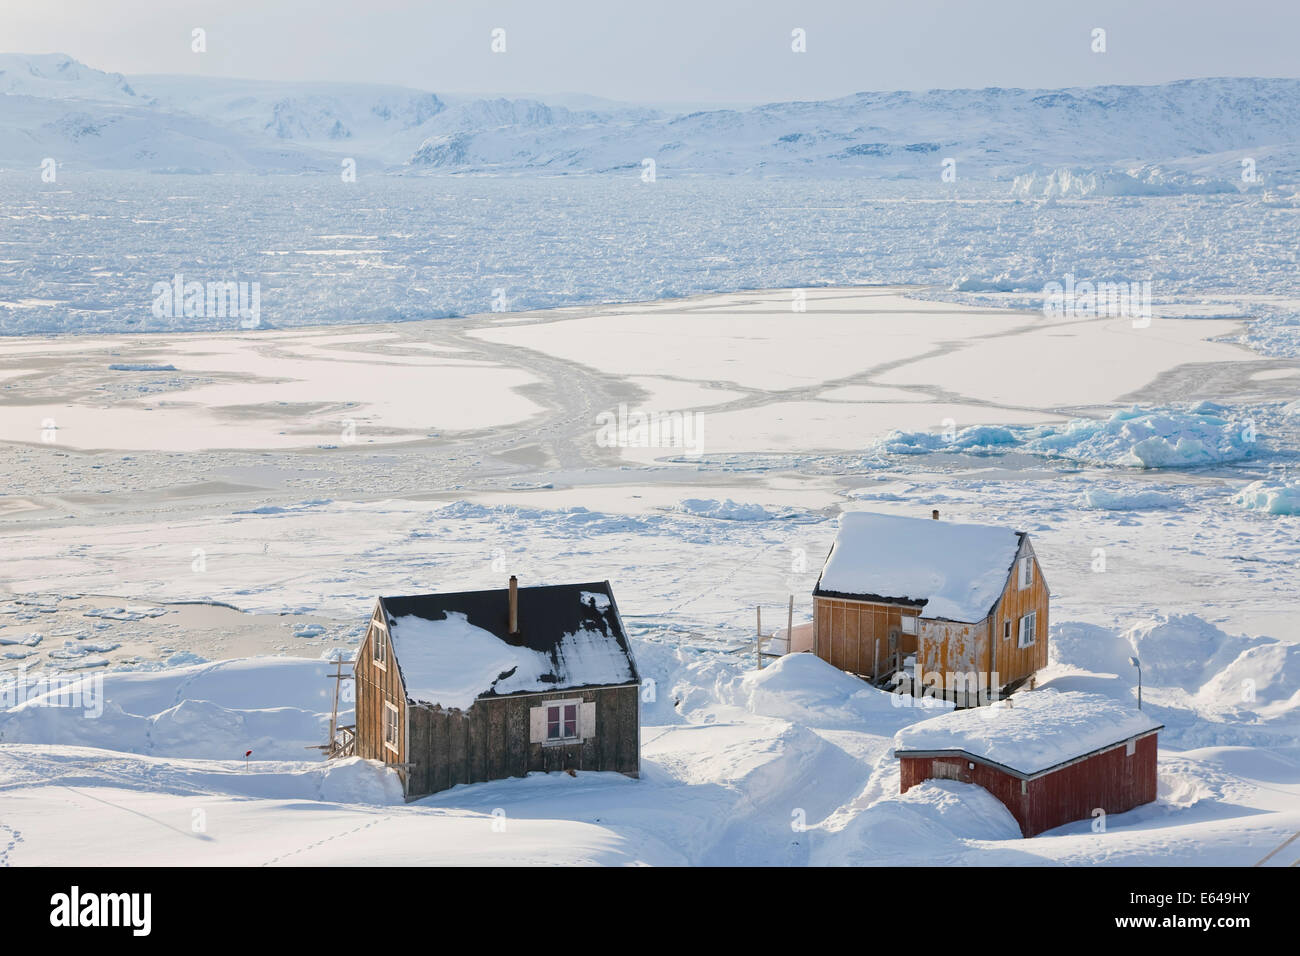 Tiniteqilaq and sea ice in winter, E. Greenland Stock Photo